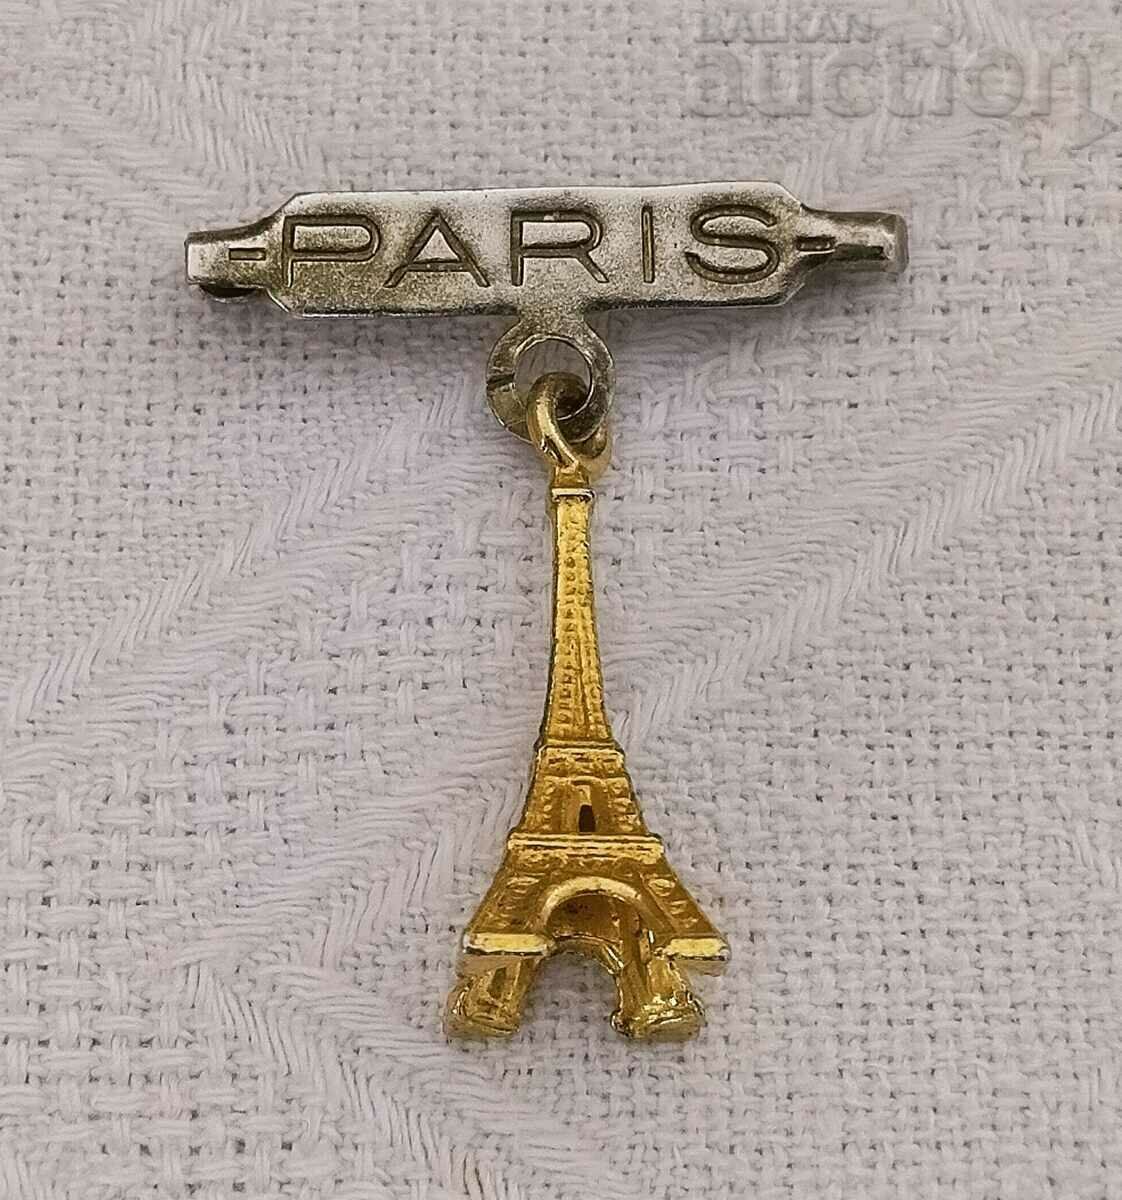 PARIS PARIS INSIGNA TURNUL EIFFEL